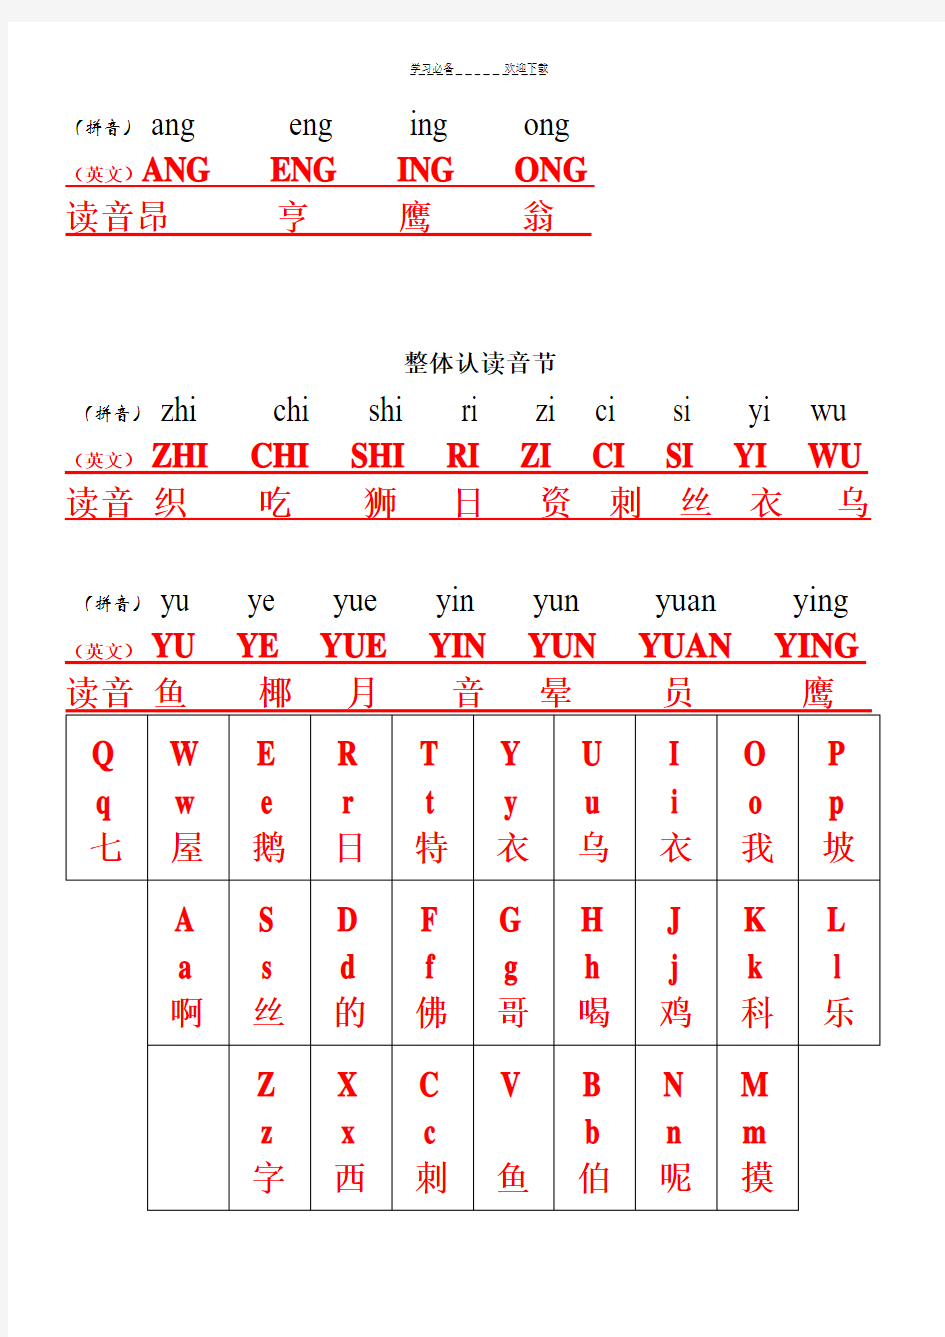 汉语拼音与英文字母键盘对照表